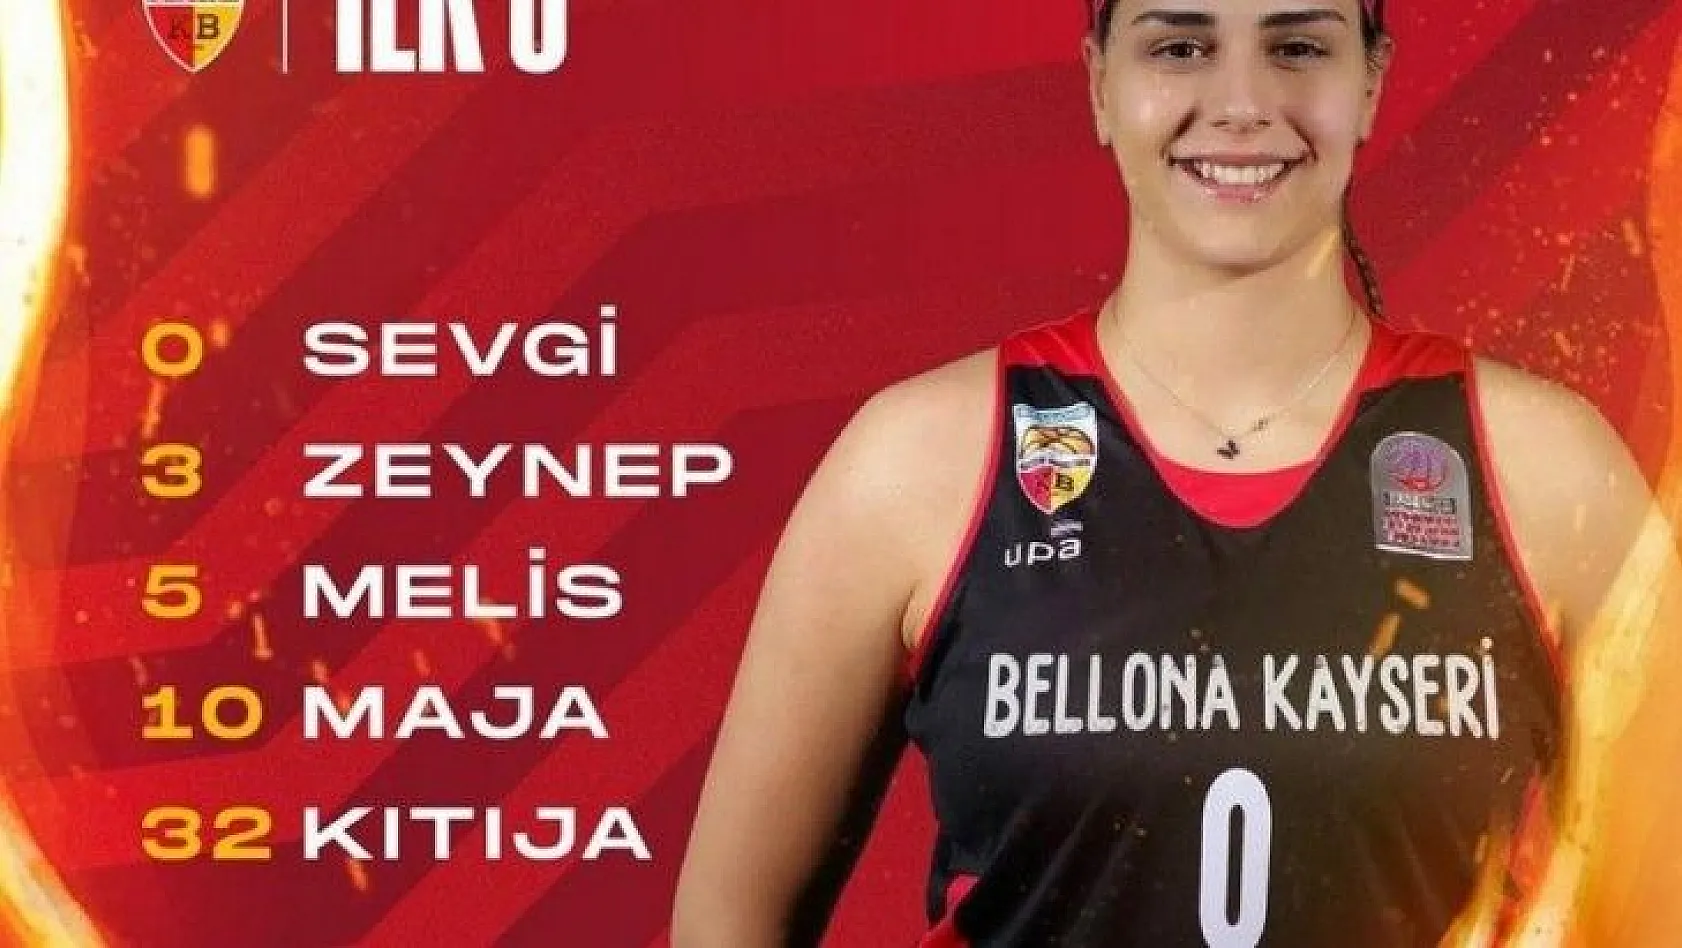 Bellona Kayseri Basketbol'da 6 oyuncu çift haneli sayılara ulaştı